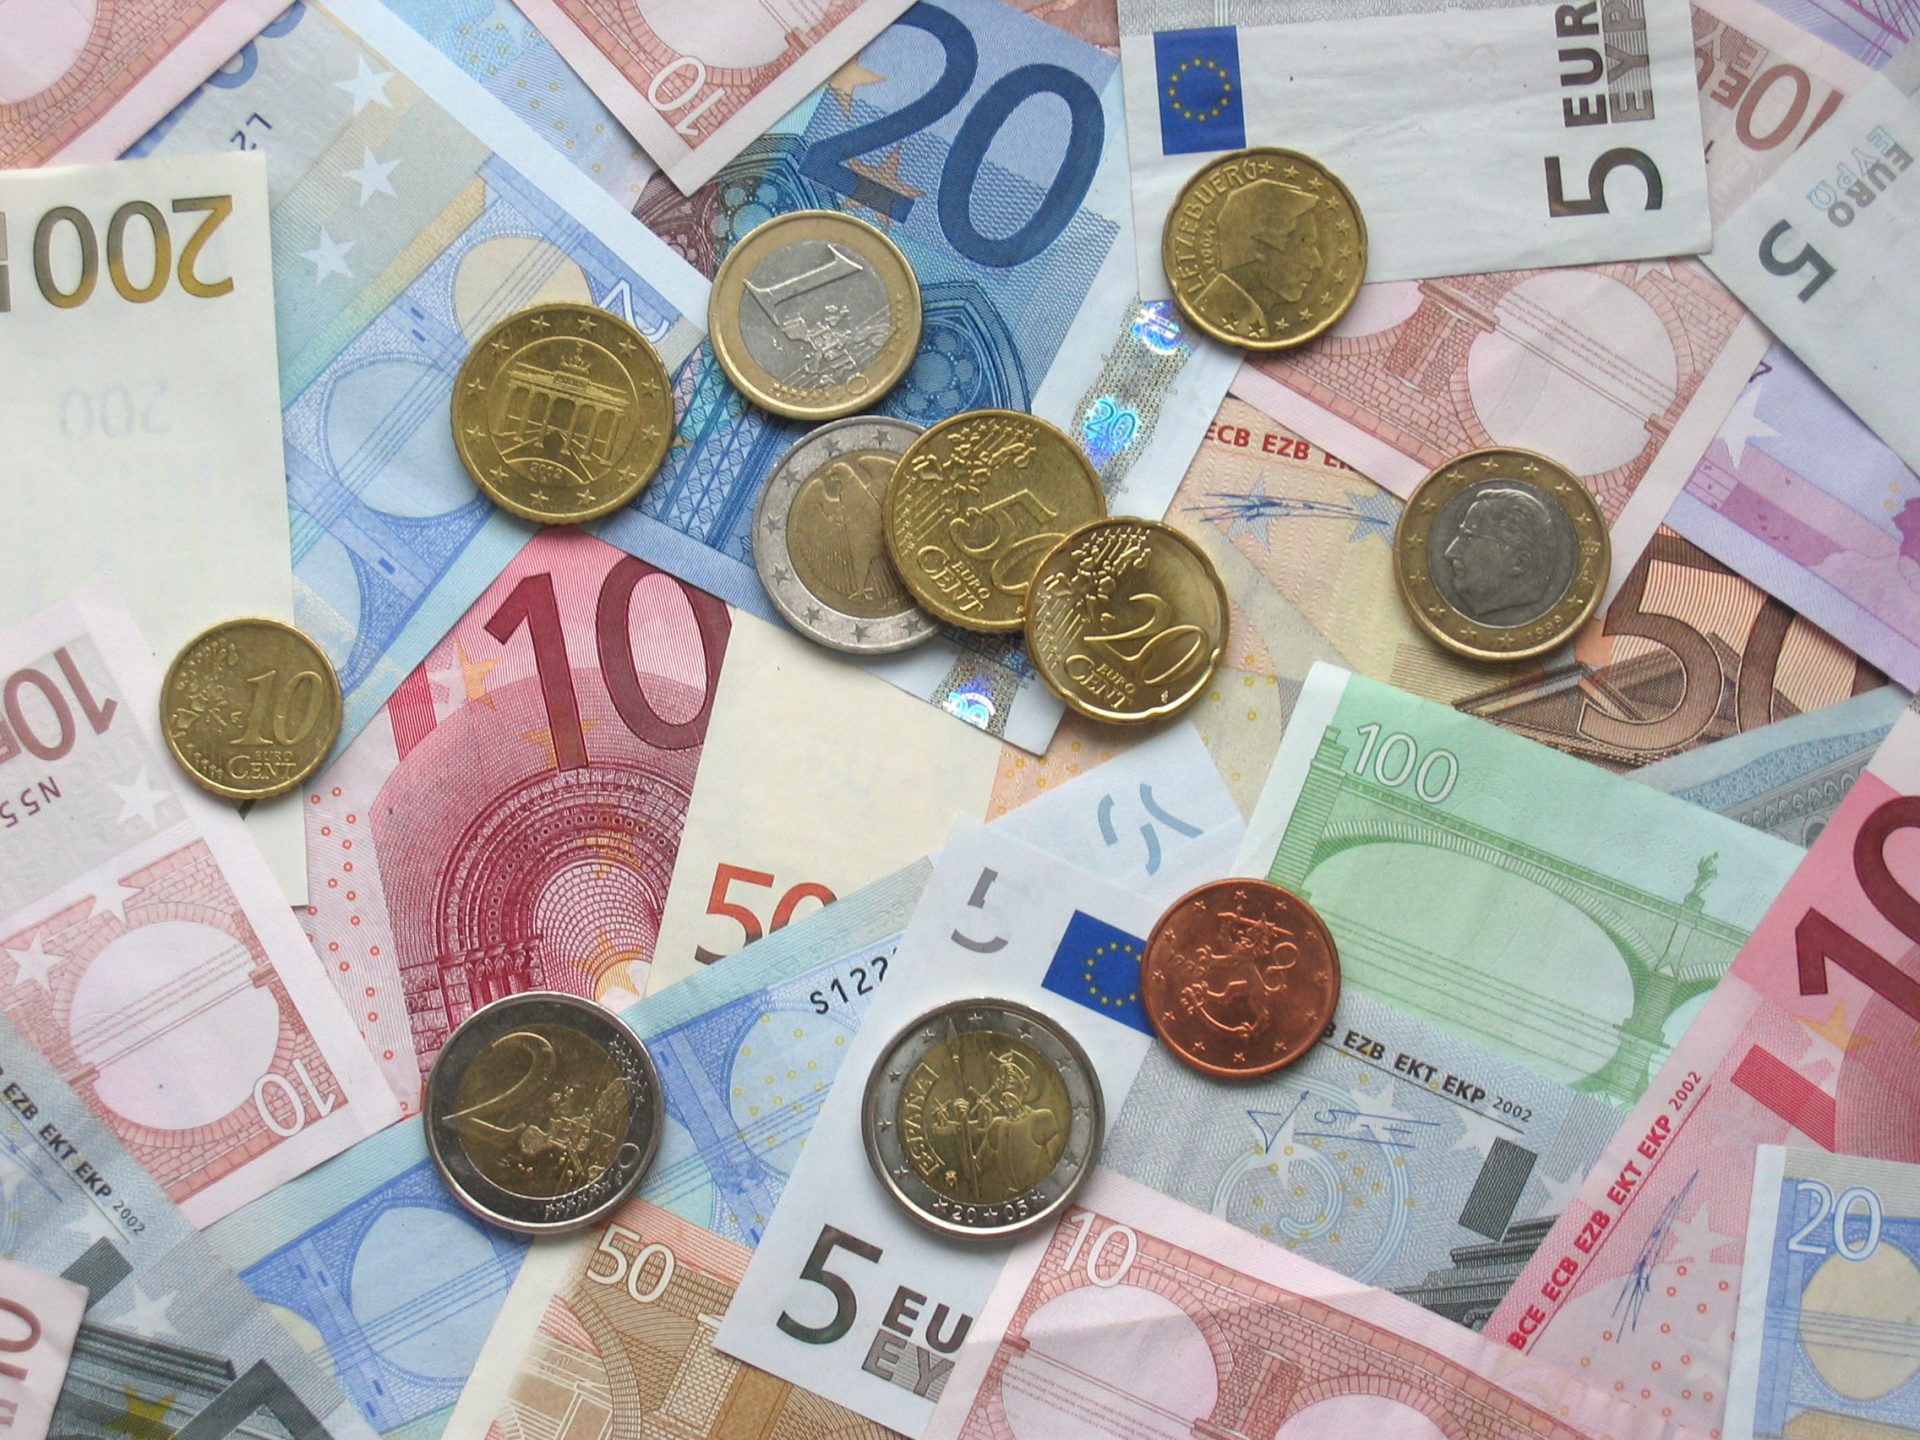 Portugal devolveu 6,6 mil milhões de euros antecipados ao FMI